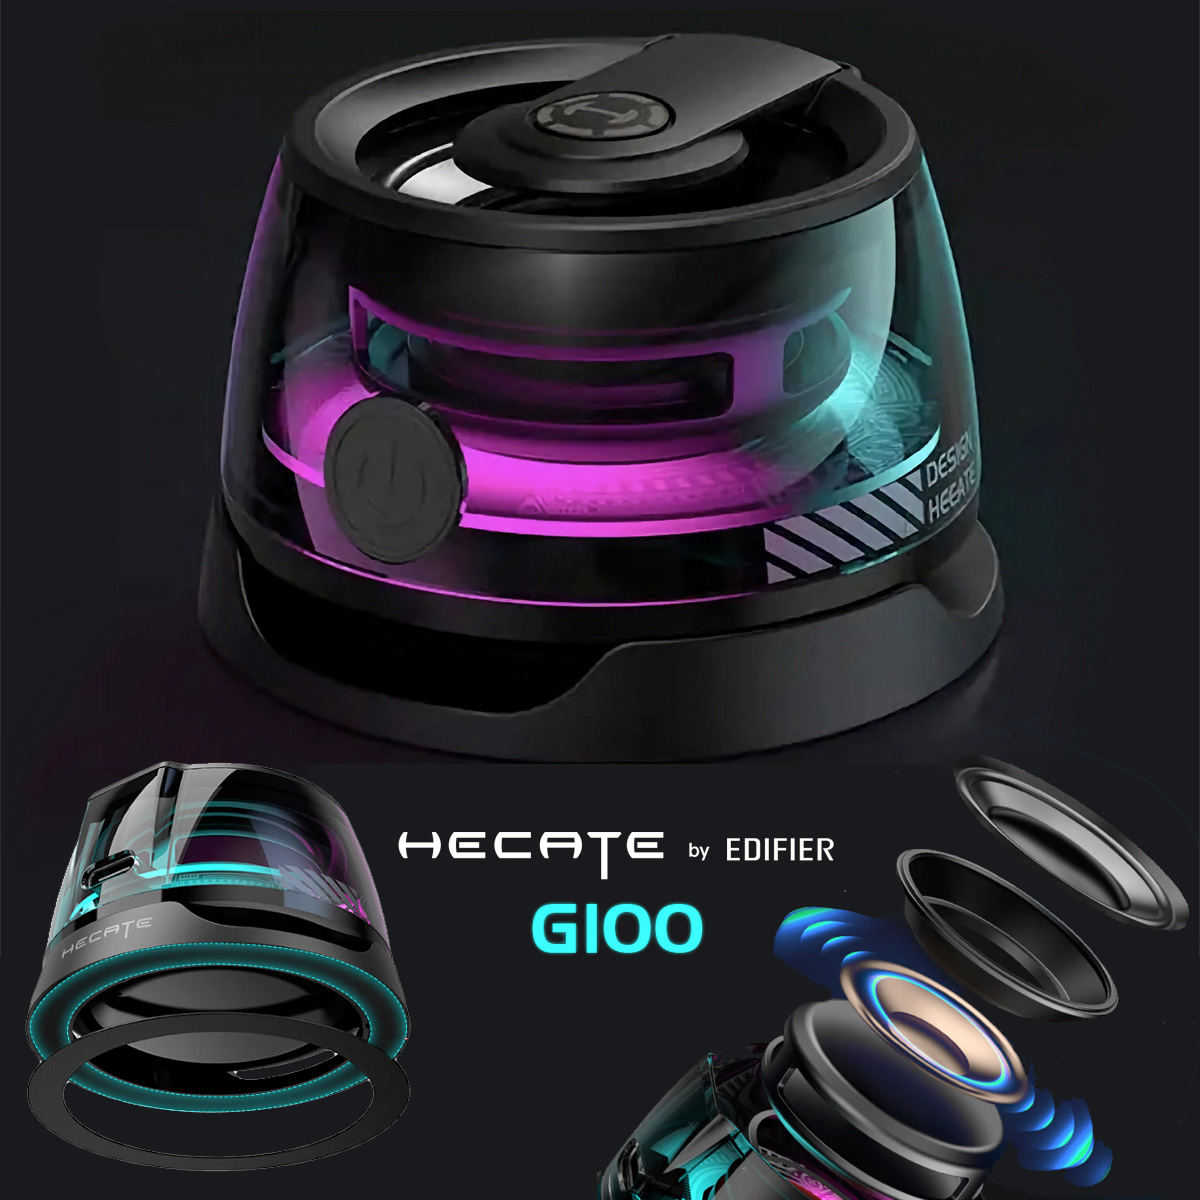 Mini caixa de som Edifier Hecate G100